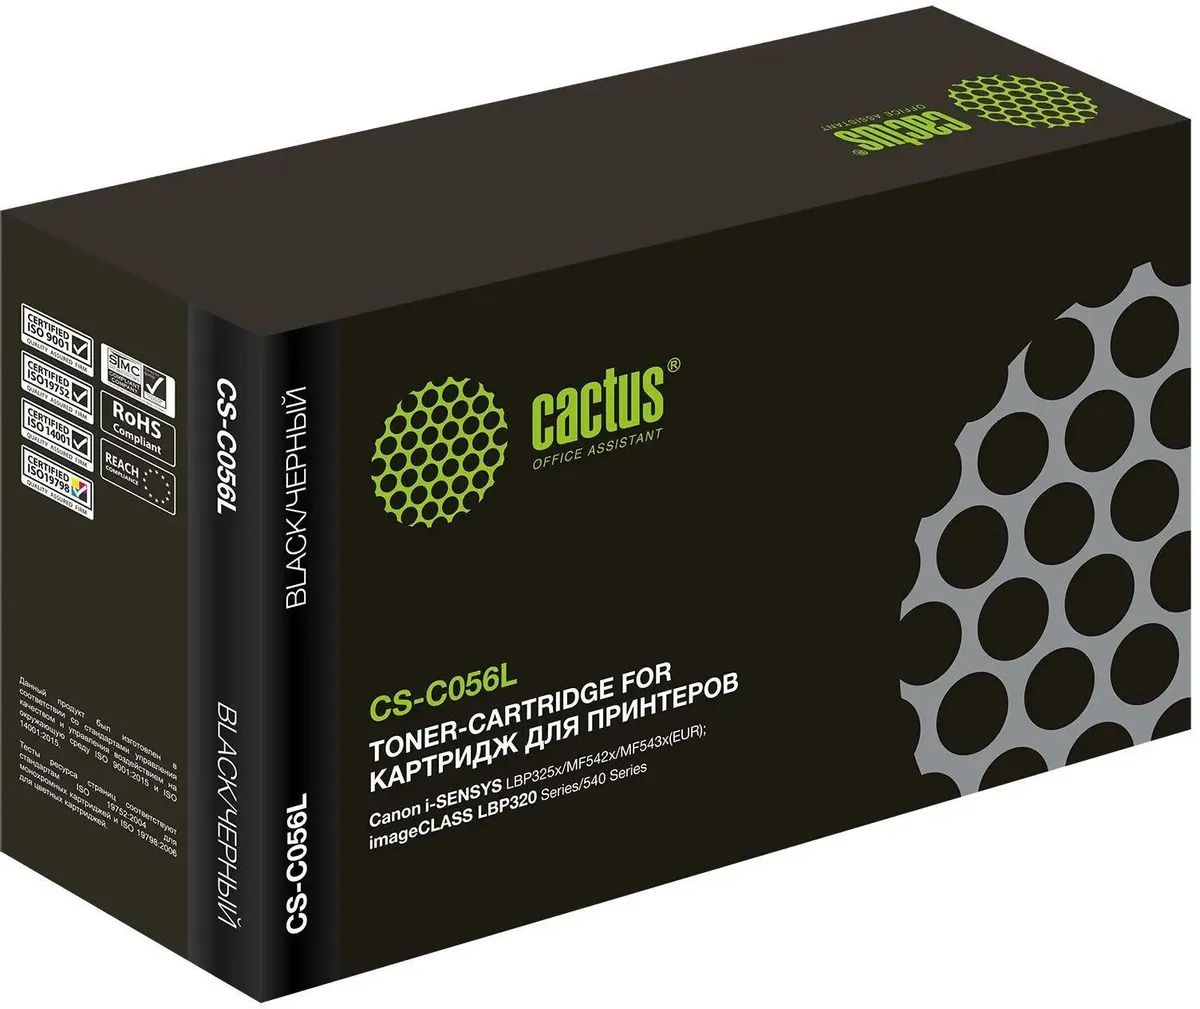 картридж лазерный cactus cs c056l черный 10000стр для canon imageclass lbp320 series 540 series Картридж лазерный Cactus CS-C056L 056 L черный (5100стр.) для Canon imageCLASS LBP320 Series/540 Series